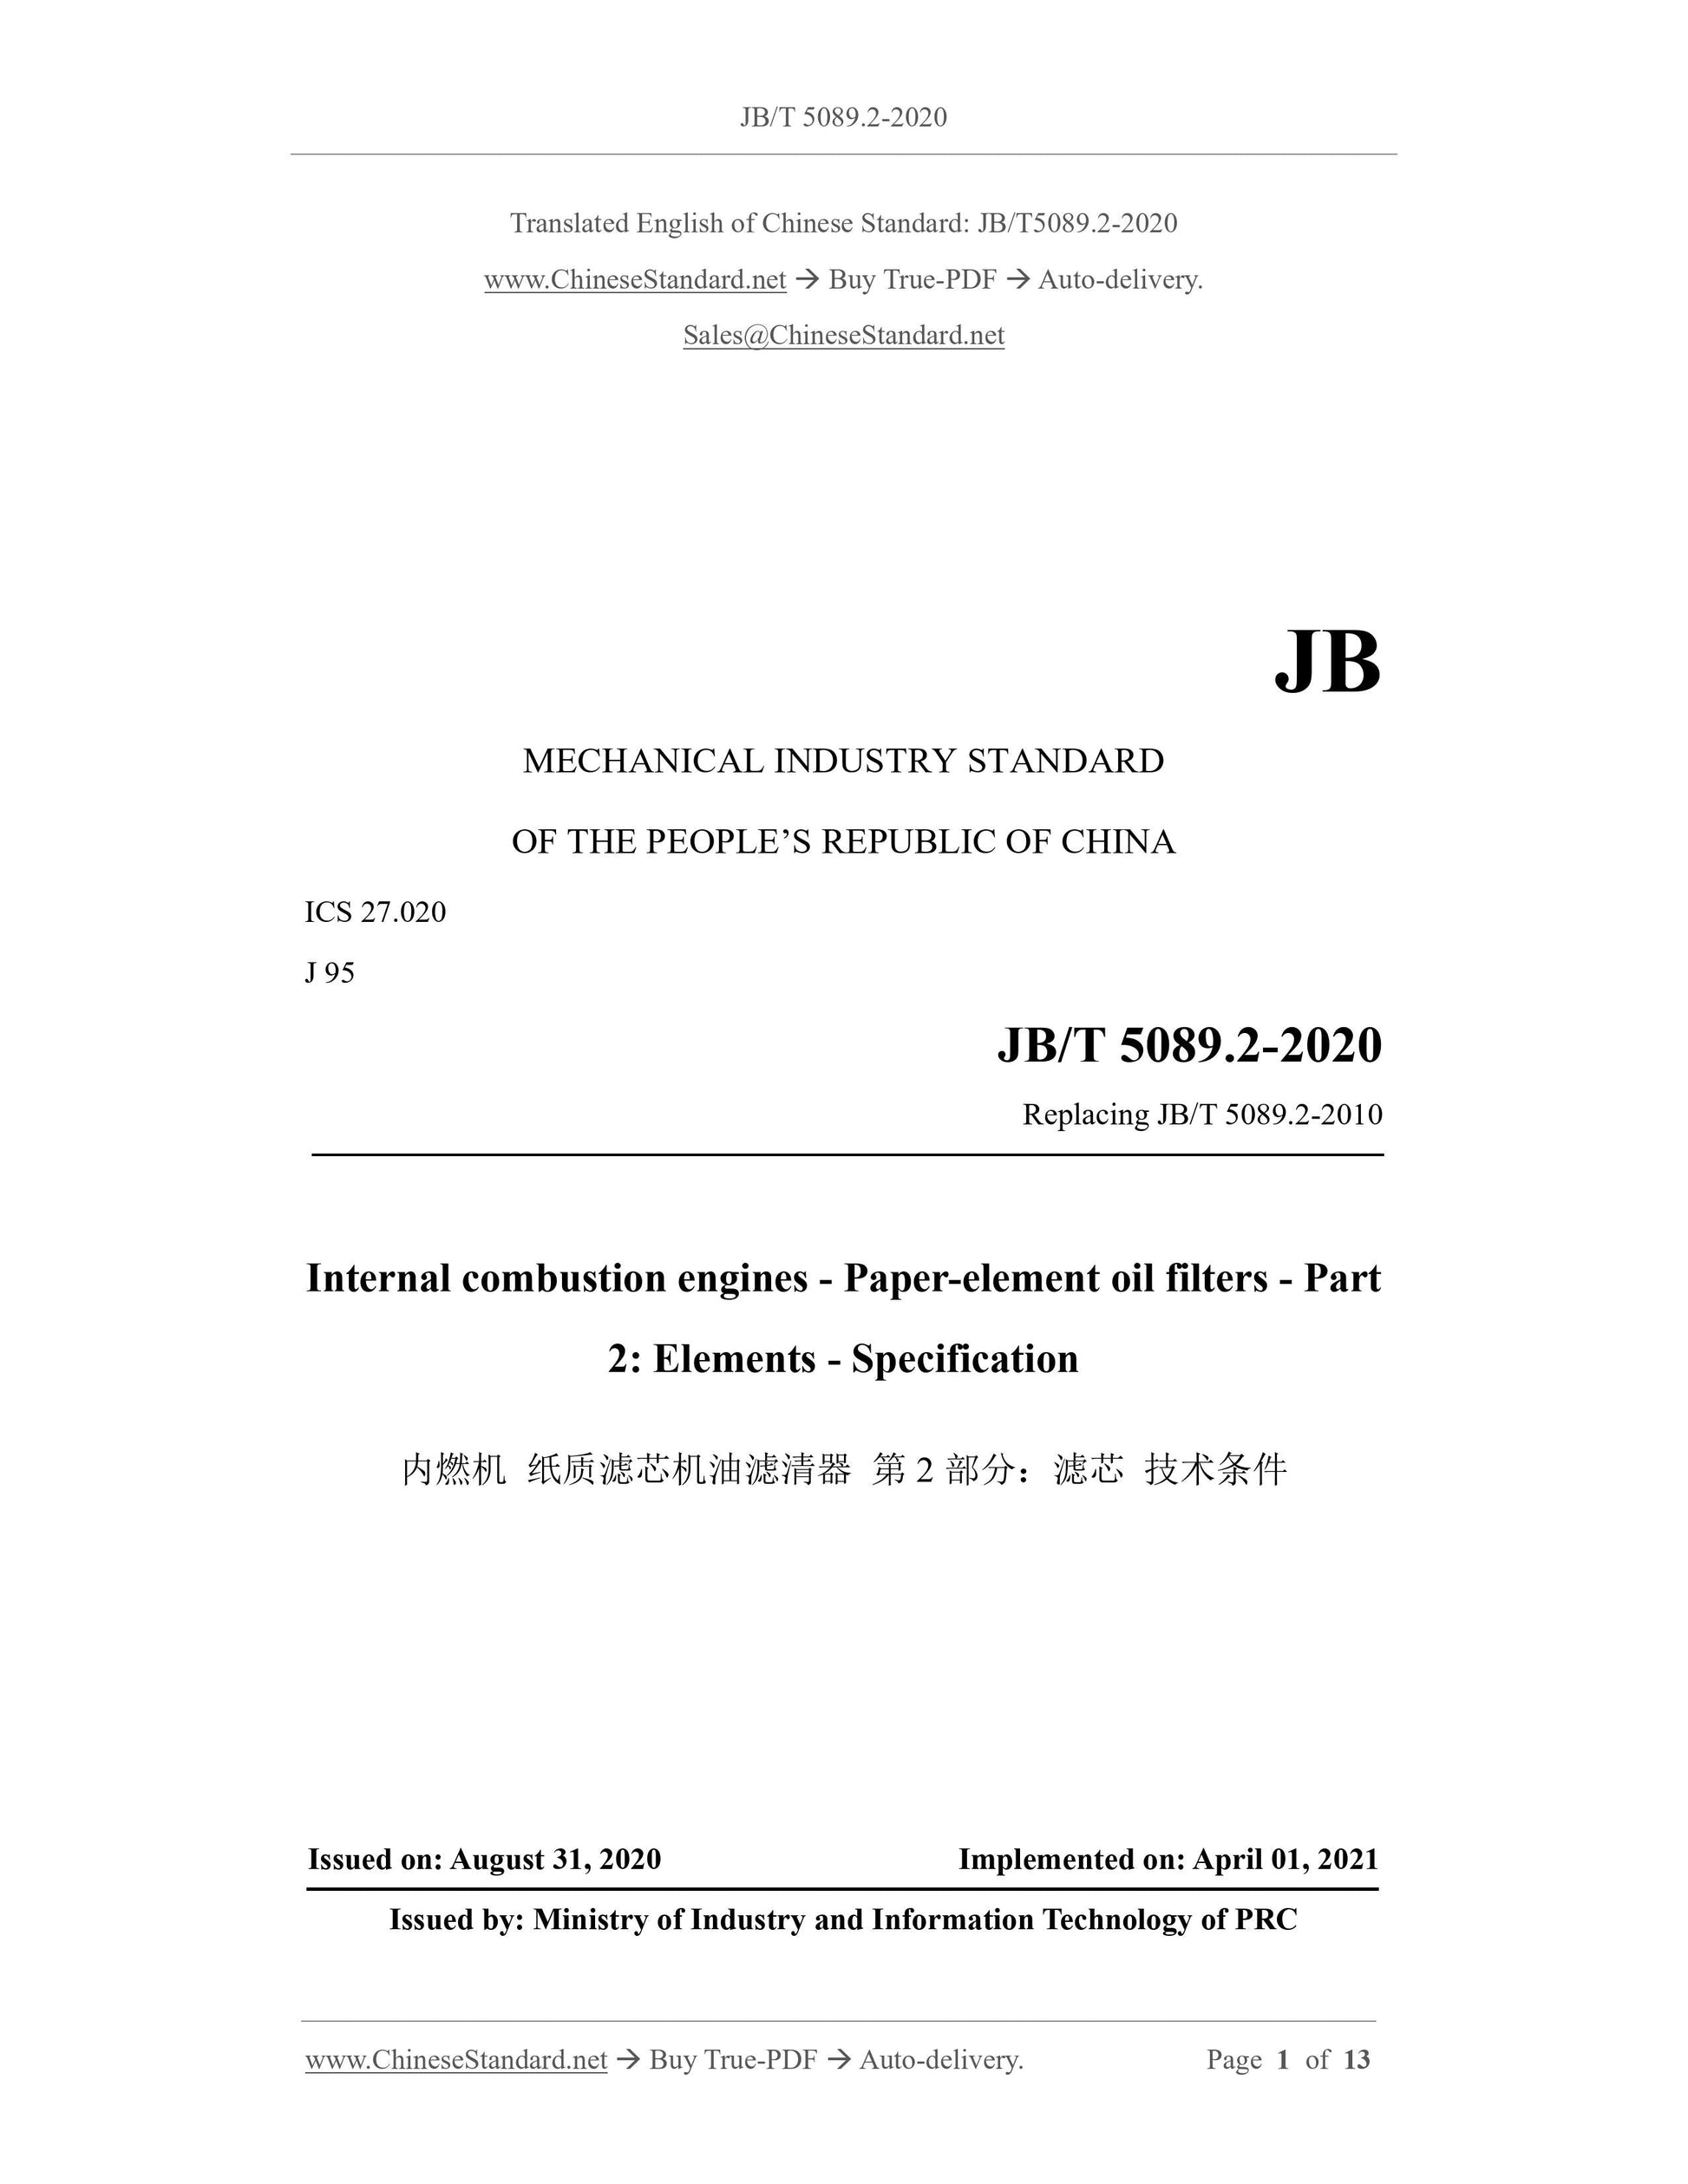 JB/T 5089.2-2020 Page 1